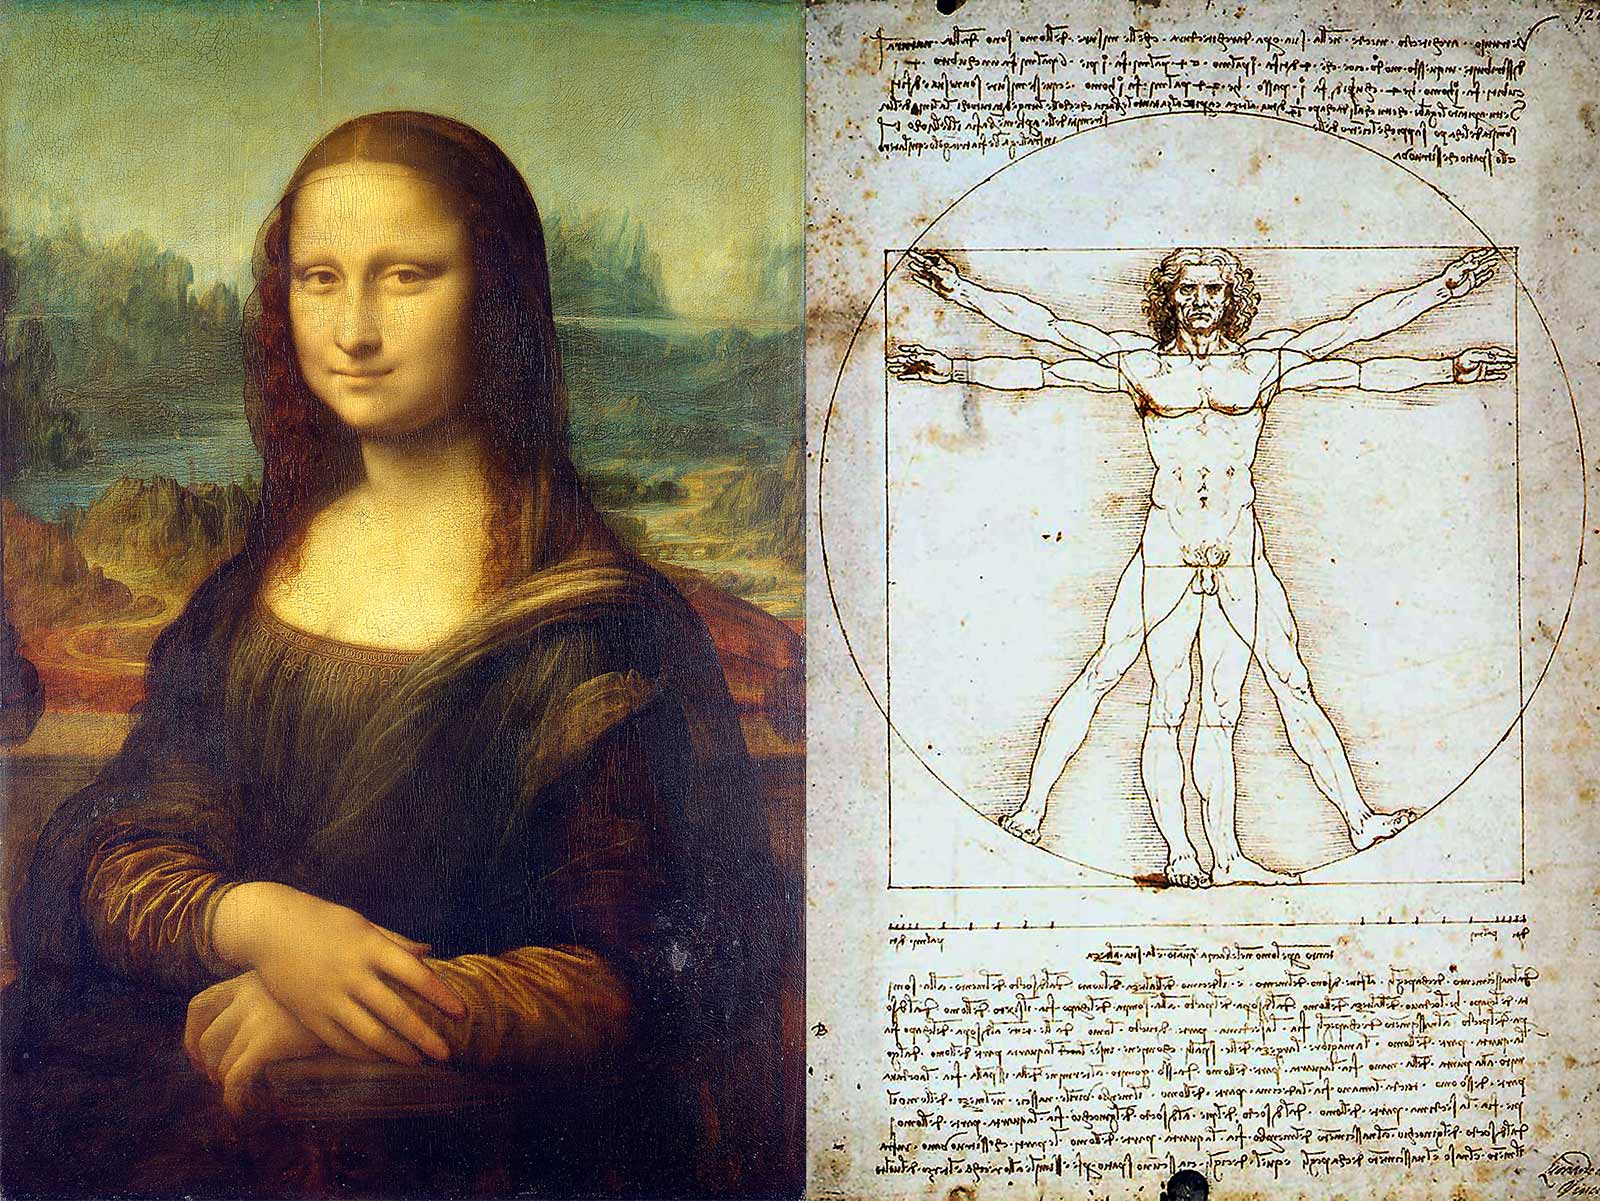 Leonardo da Vinci (1452-1519) brukar betraktas som den mest betydelsefulla renässansmänniskan.